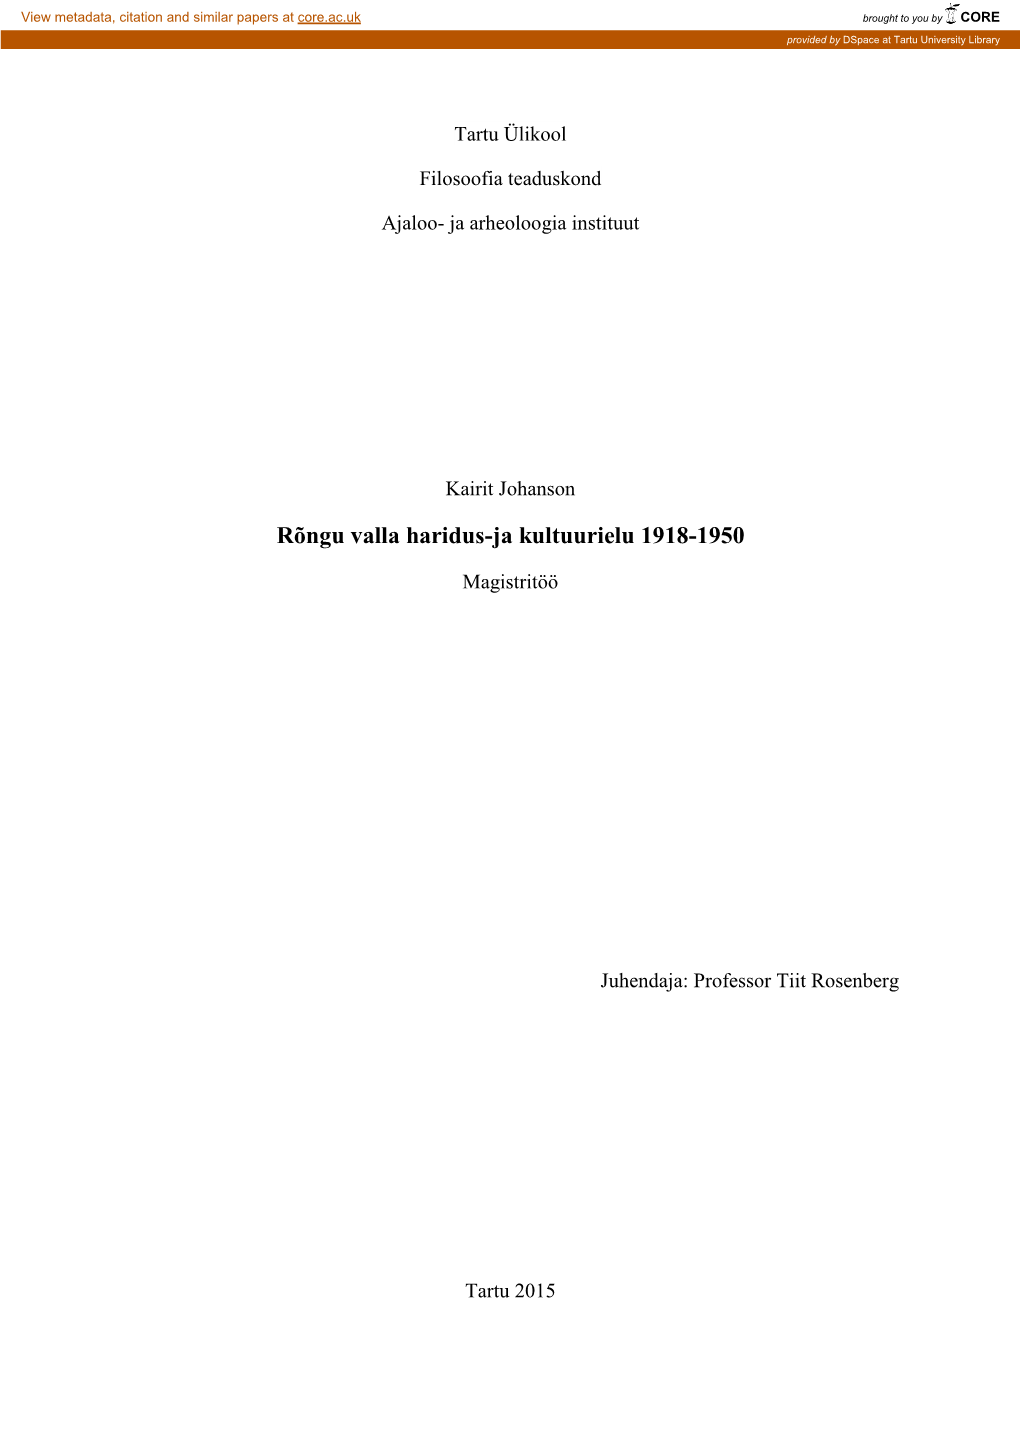 Rõngu Valla Haridus-Ja Kultuurielu 1918-1950